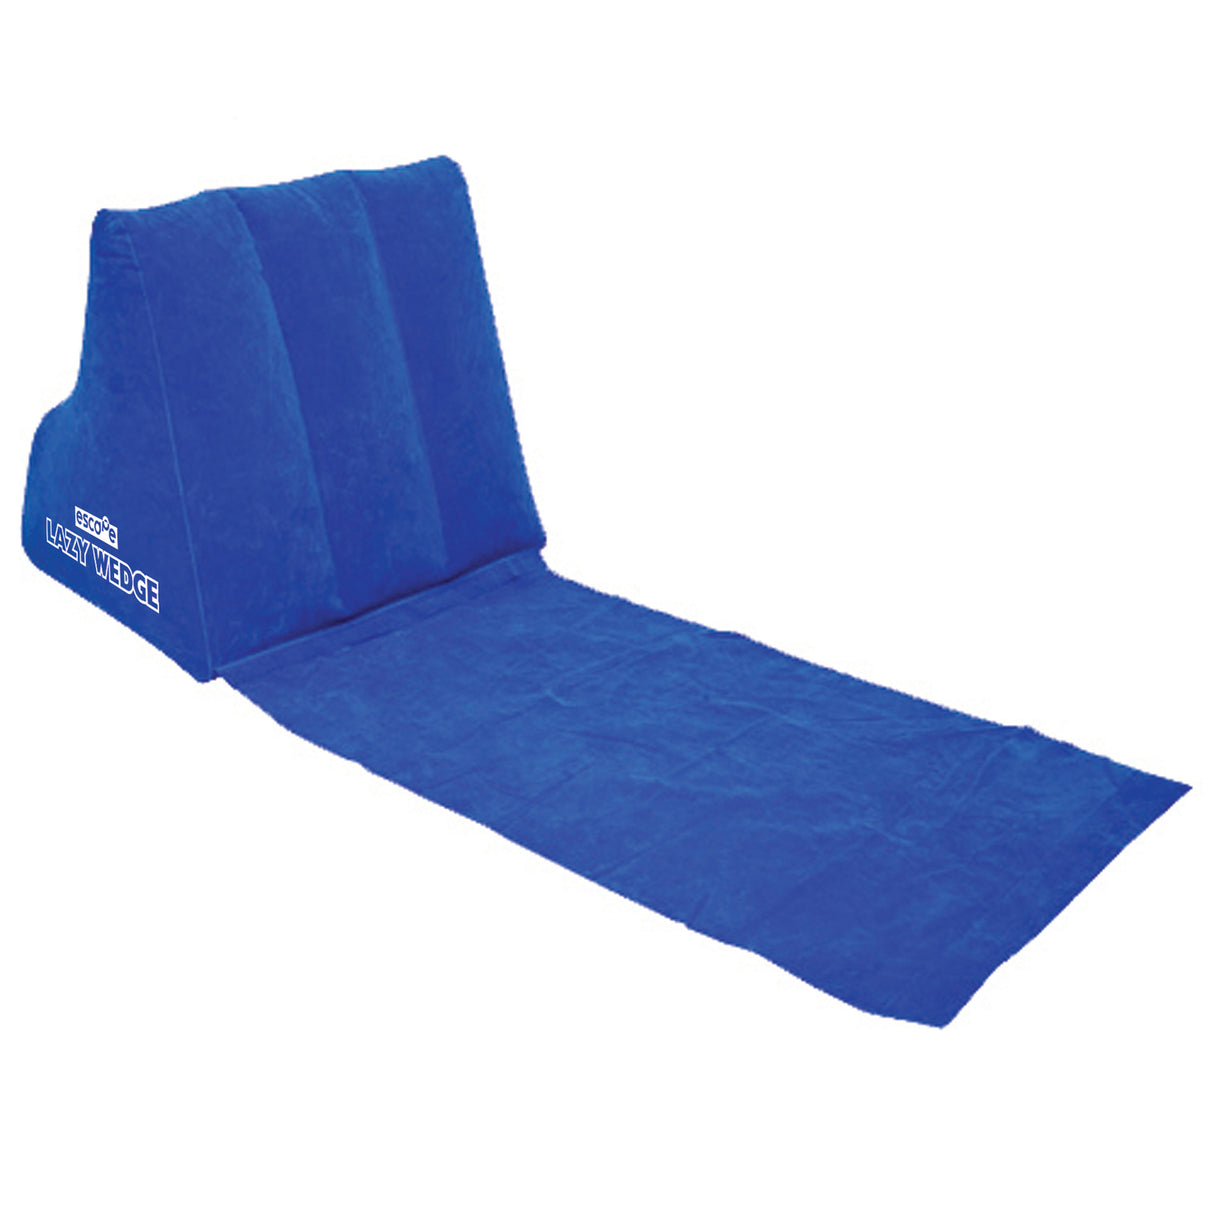 Lazy Wedge Strandliege mit aufblasbarer Rückenlehne in blau